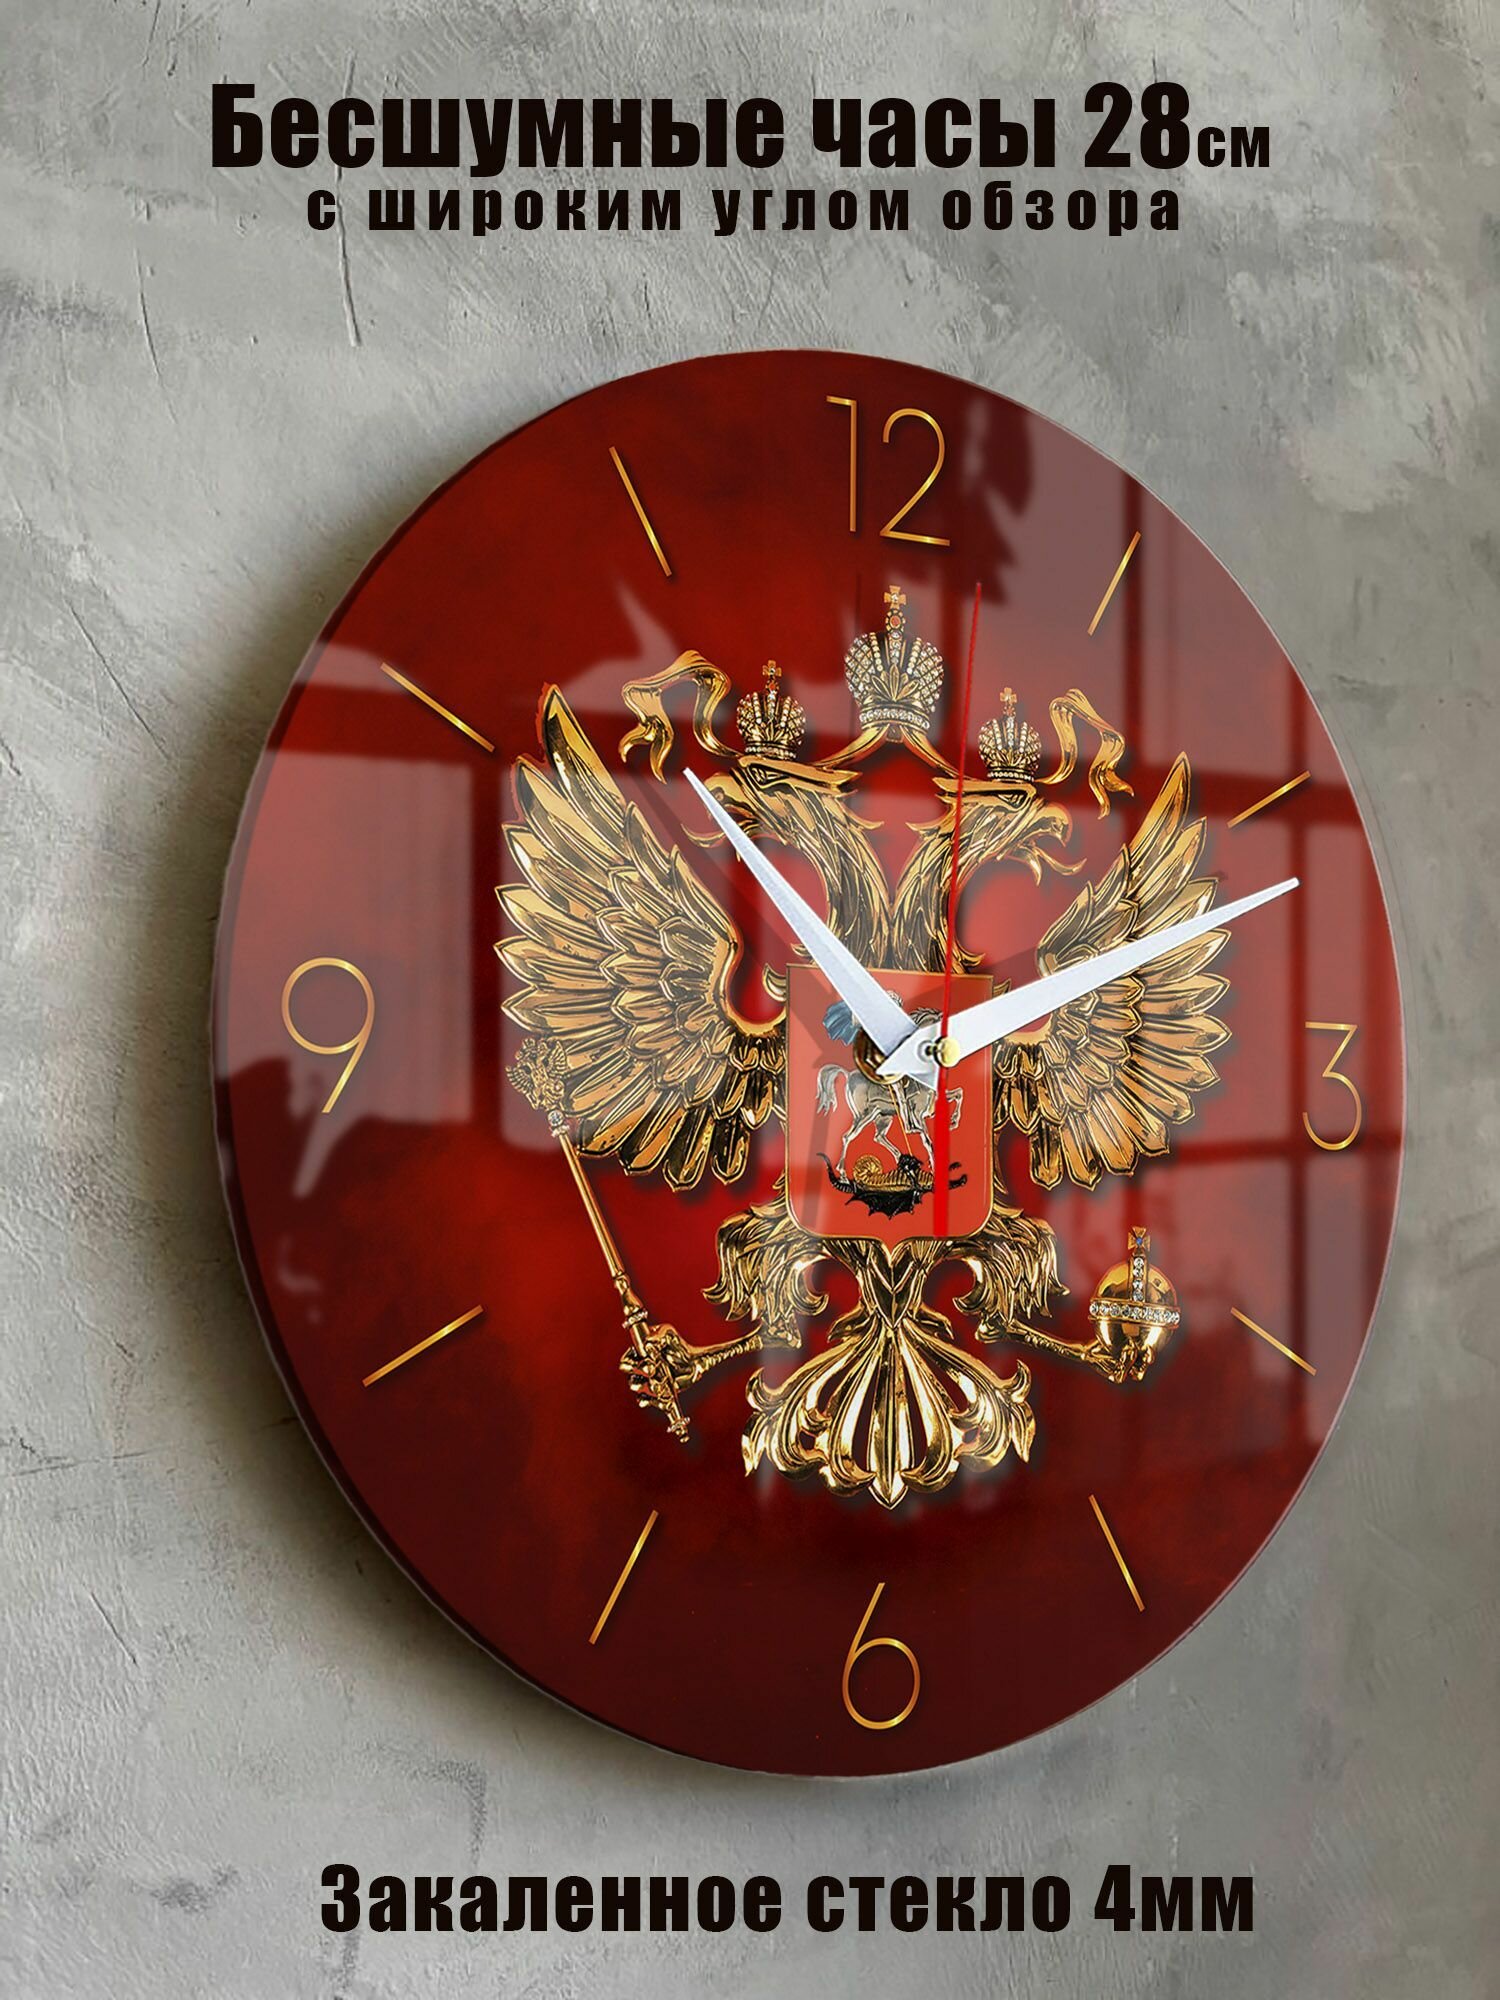 Часы настенные бесшумные большие на кухню на стену Двуглавый орел Герб России "Часовой завод идеал" часы кухонные интерьерные настенные часы